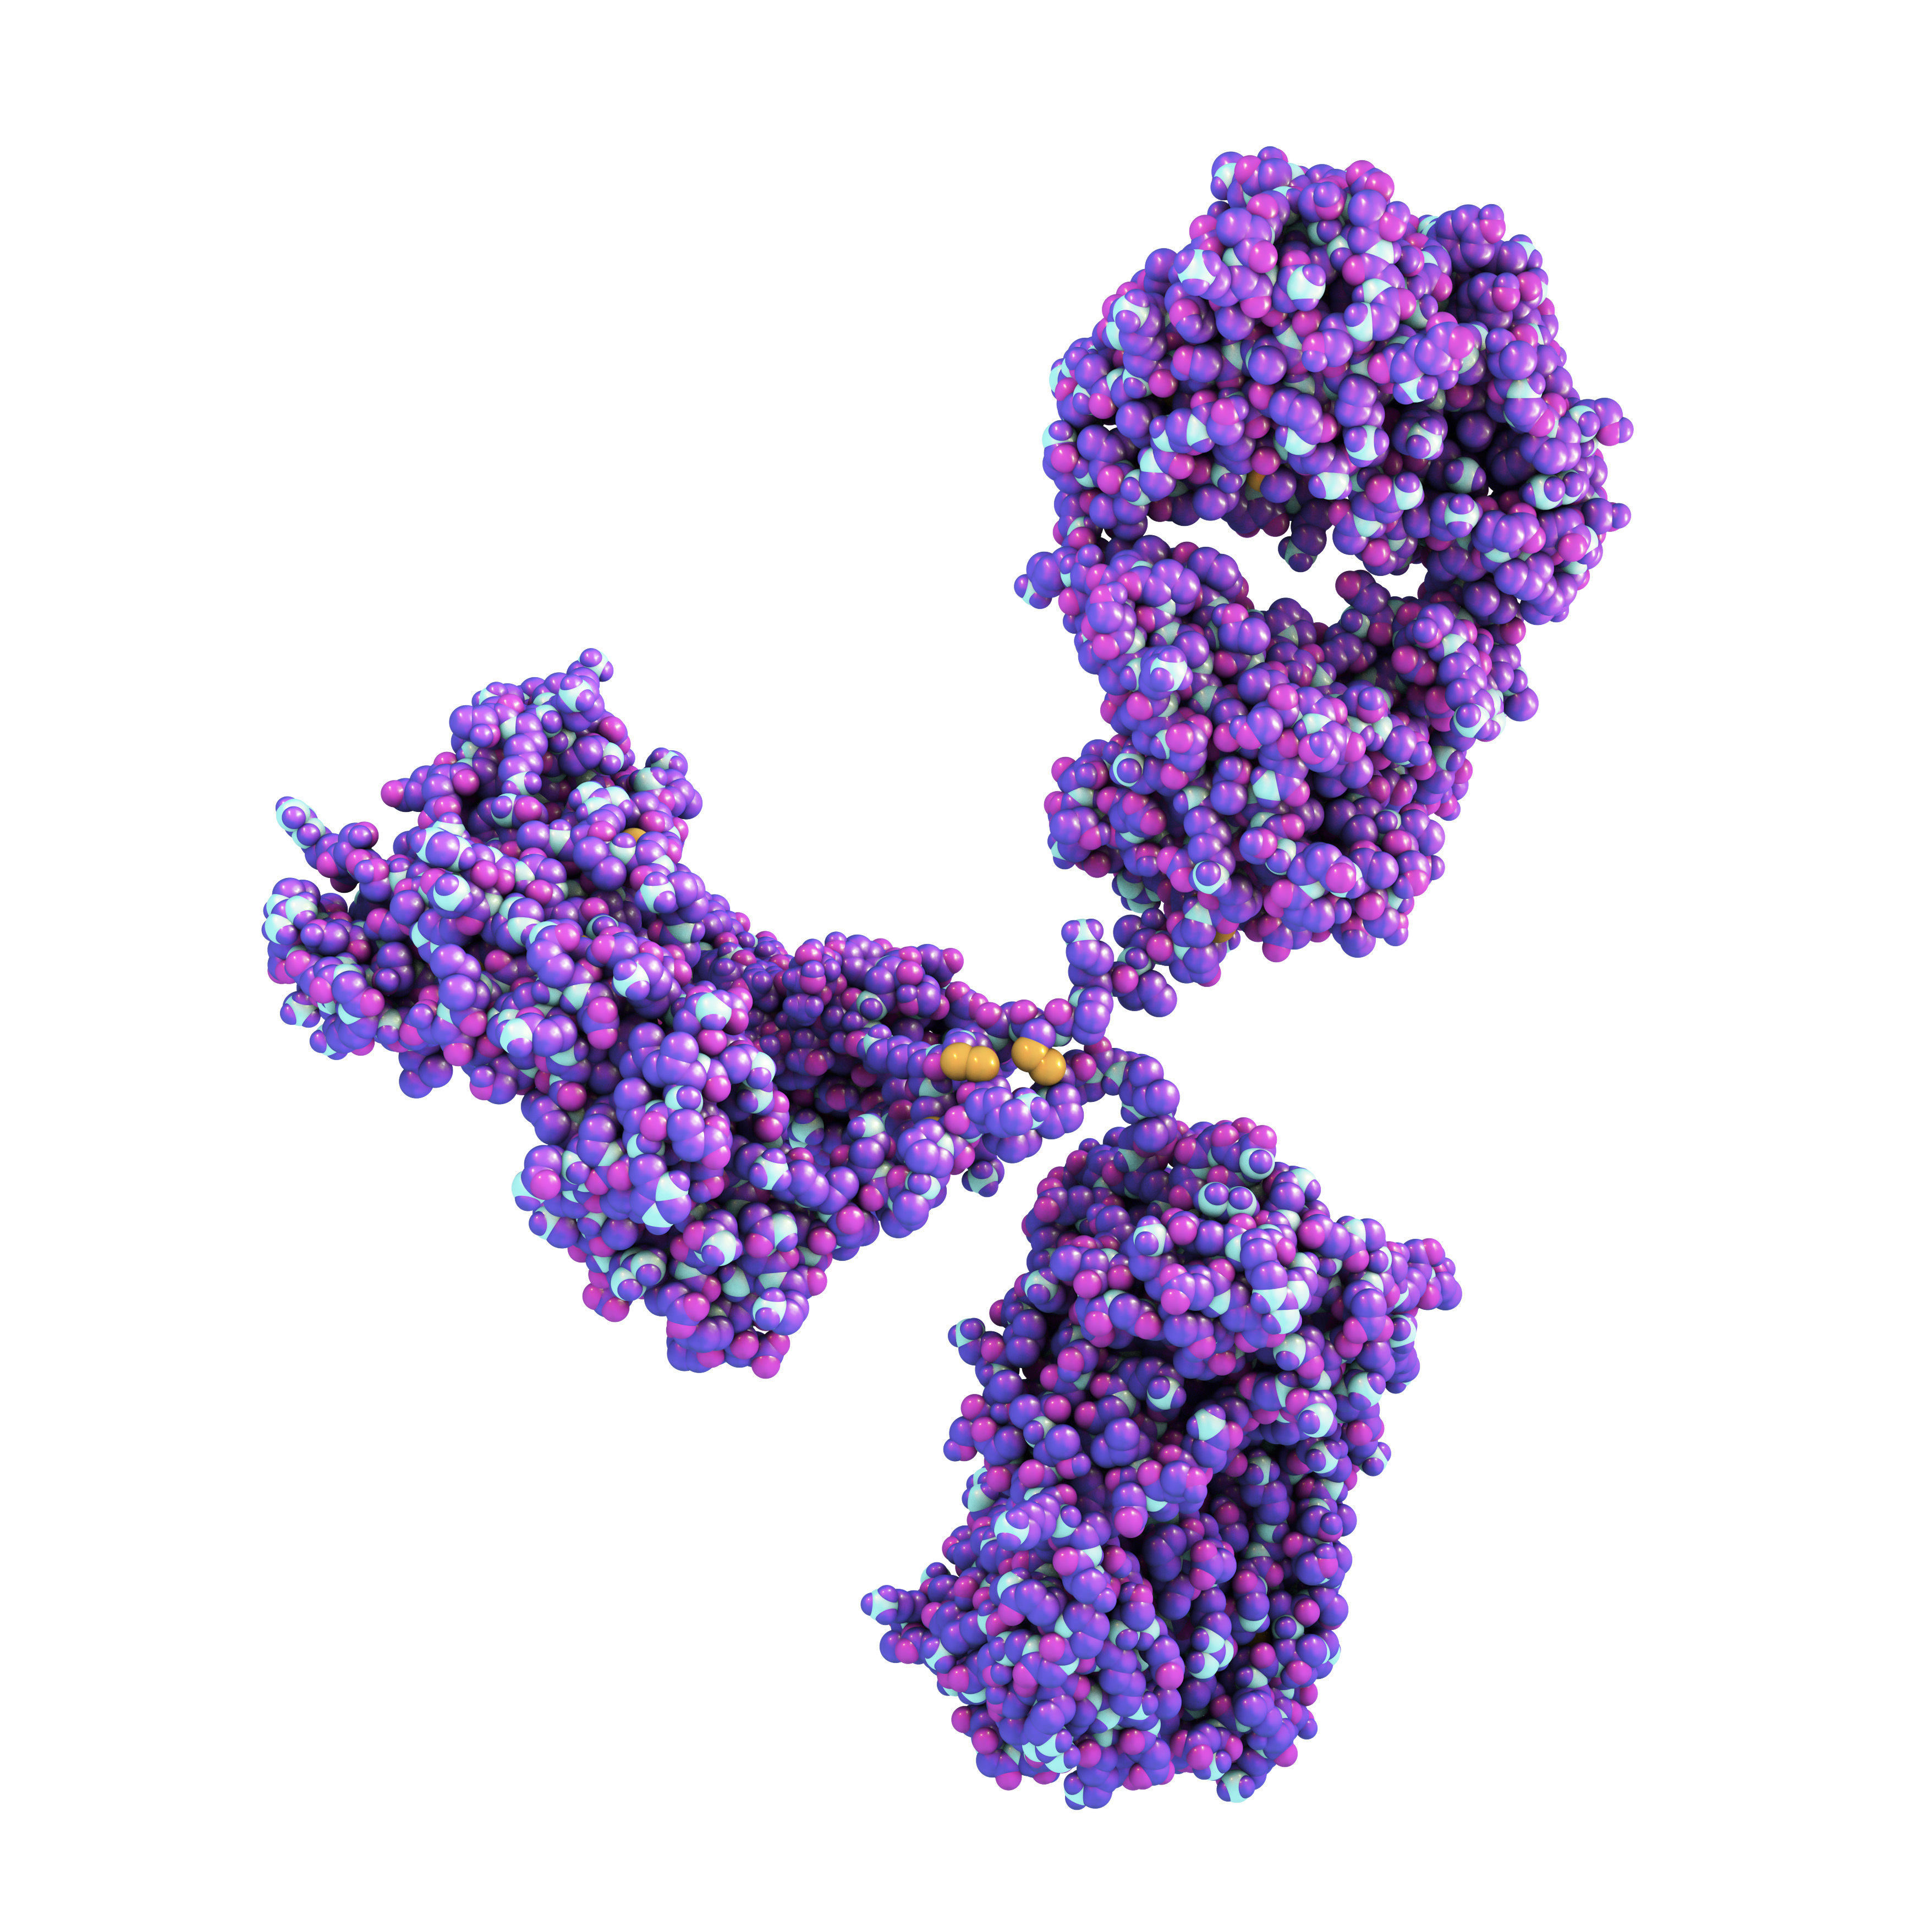 Human IgM SARS-CoV-2 (DH6)